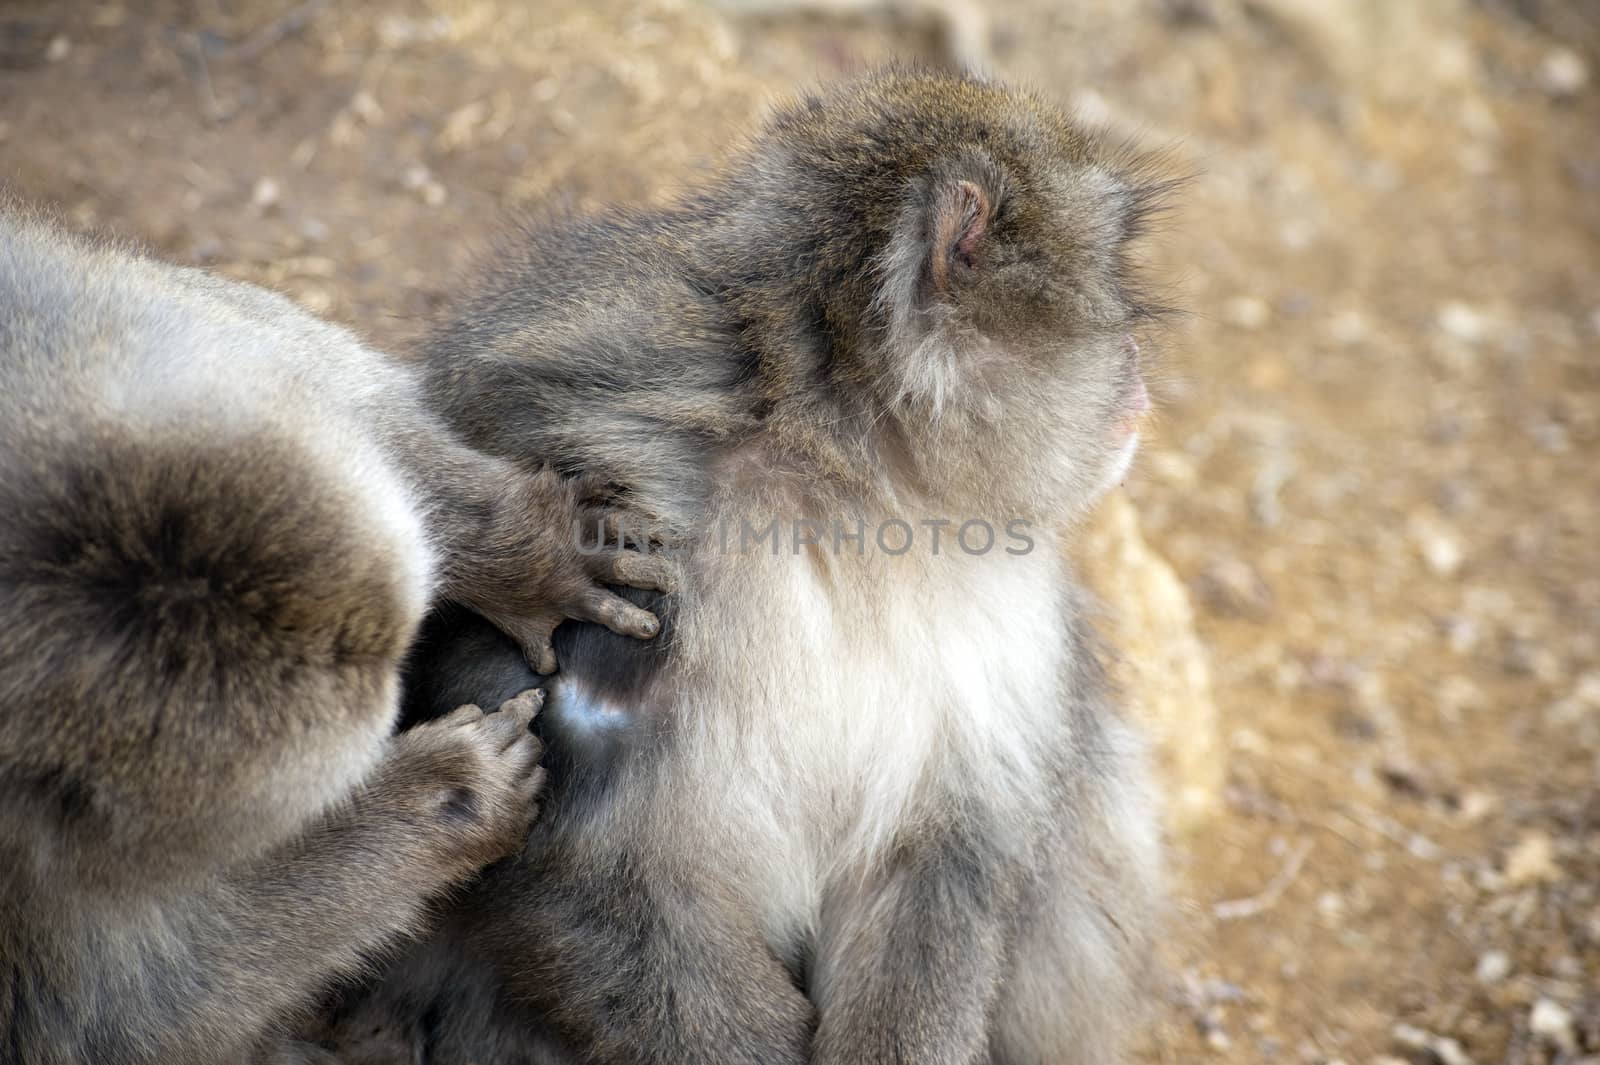 Friendly monkey preening friend by stockarch